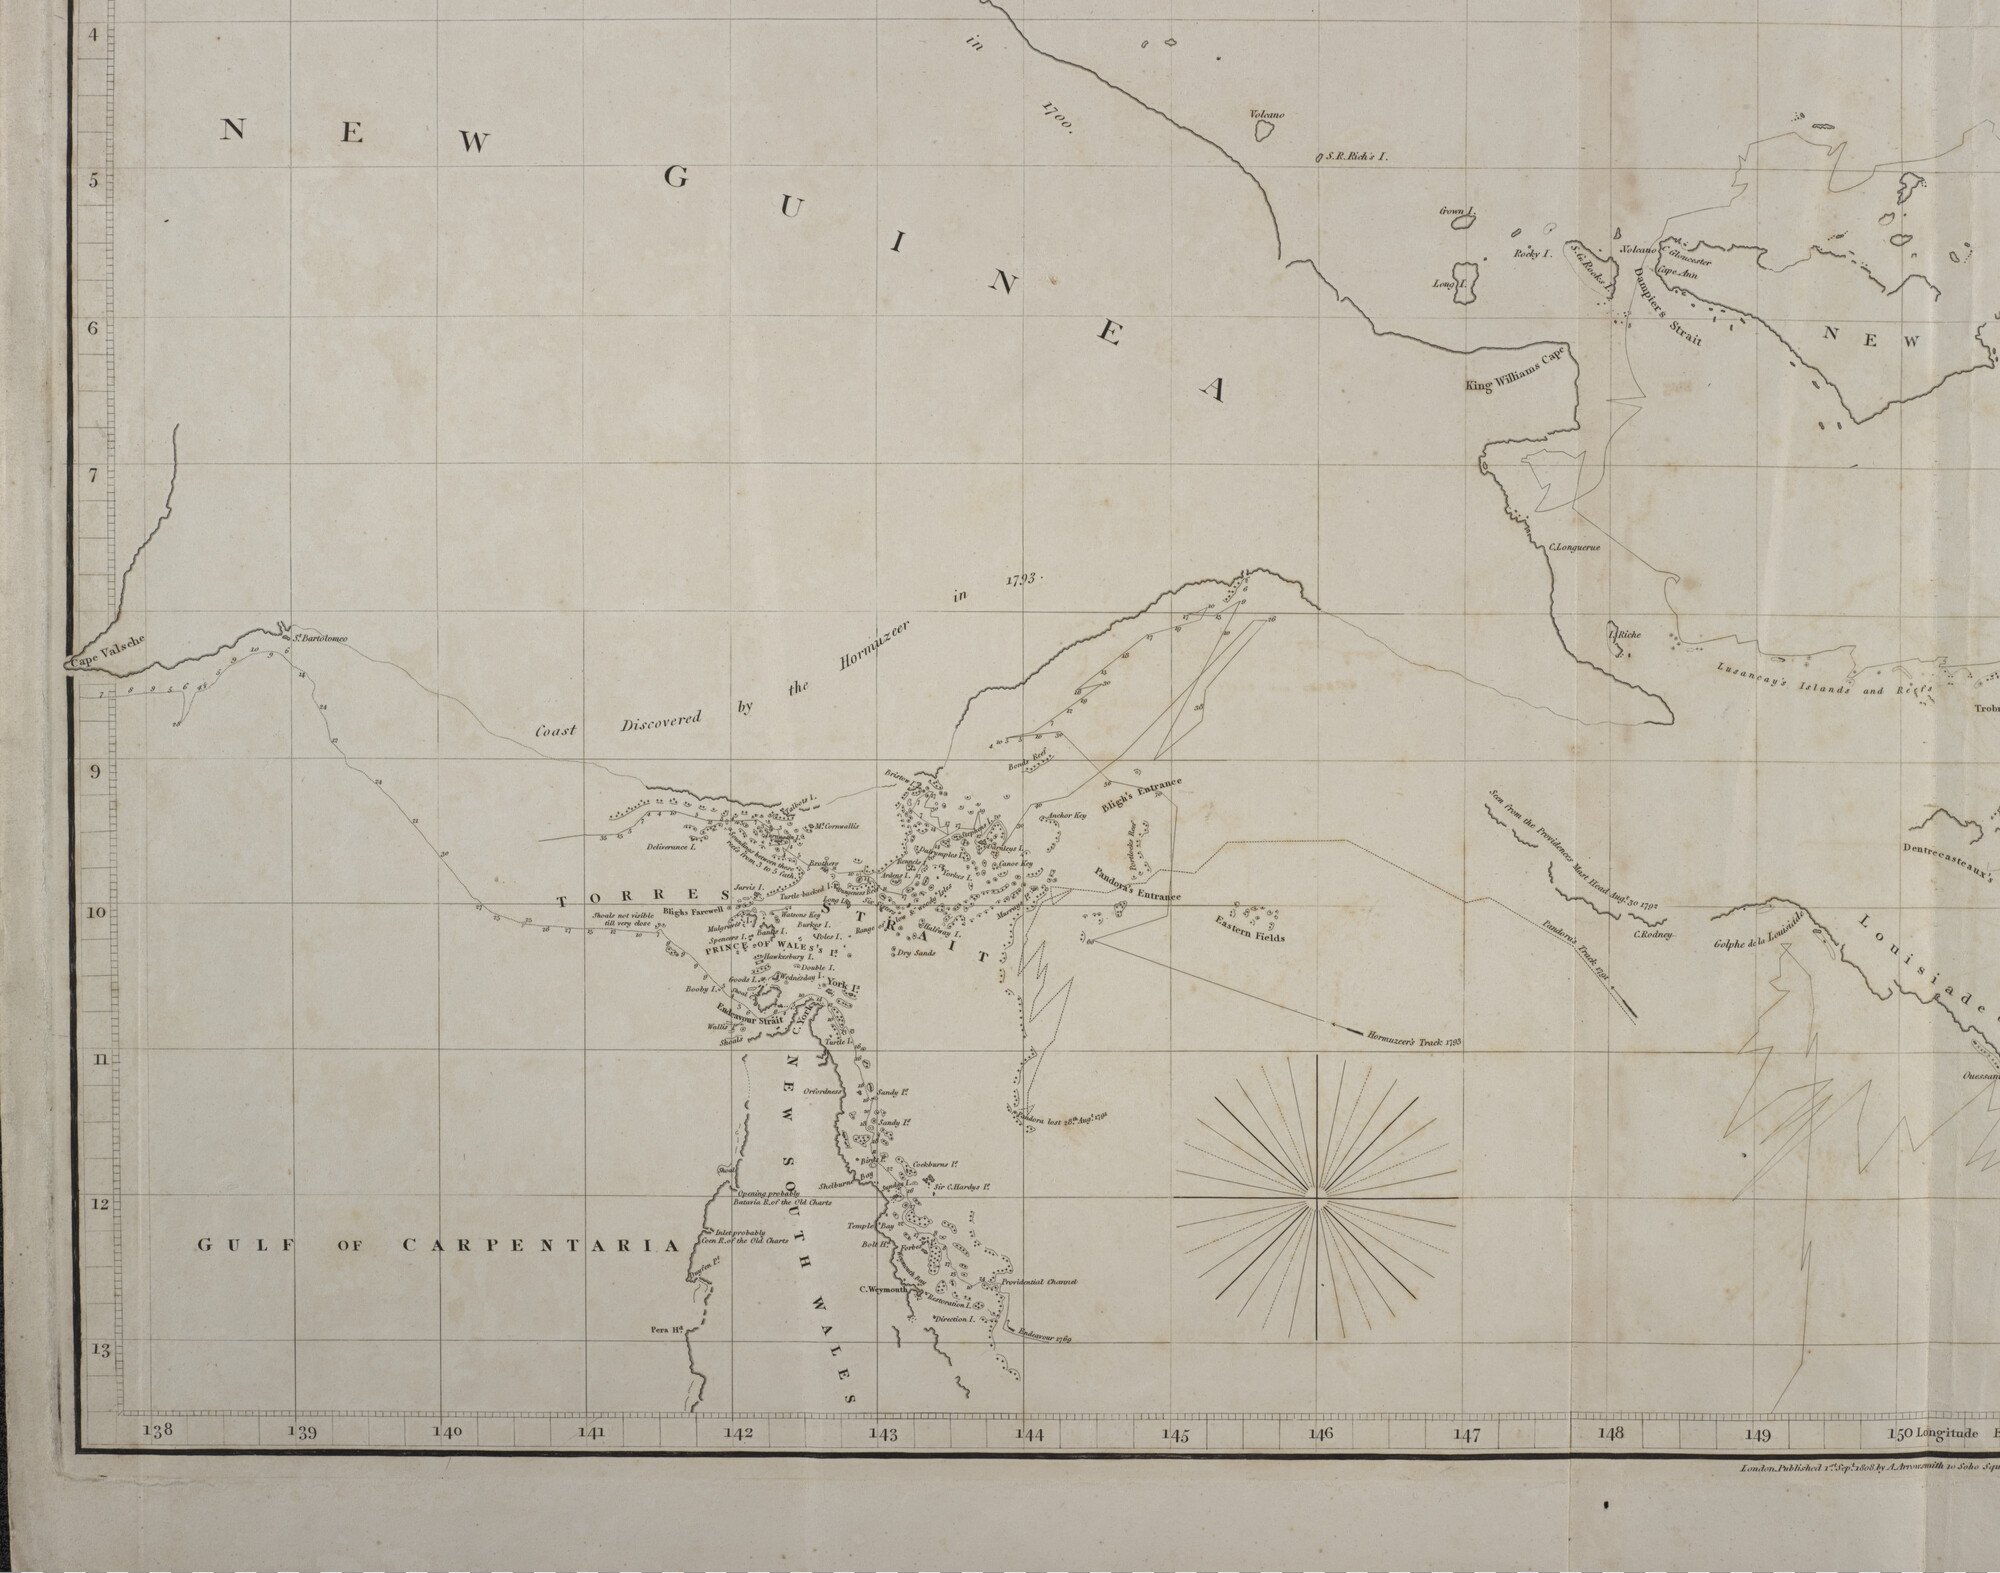 S.0521(093); Kaart van eilanden en passages beoosten Nieuw Guinea, gravure E. Jones, uitgave Aaron Arrowsmith (1750-1833), Londen, 1808, verbeterd tot 1818; zeekaart